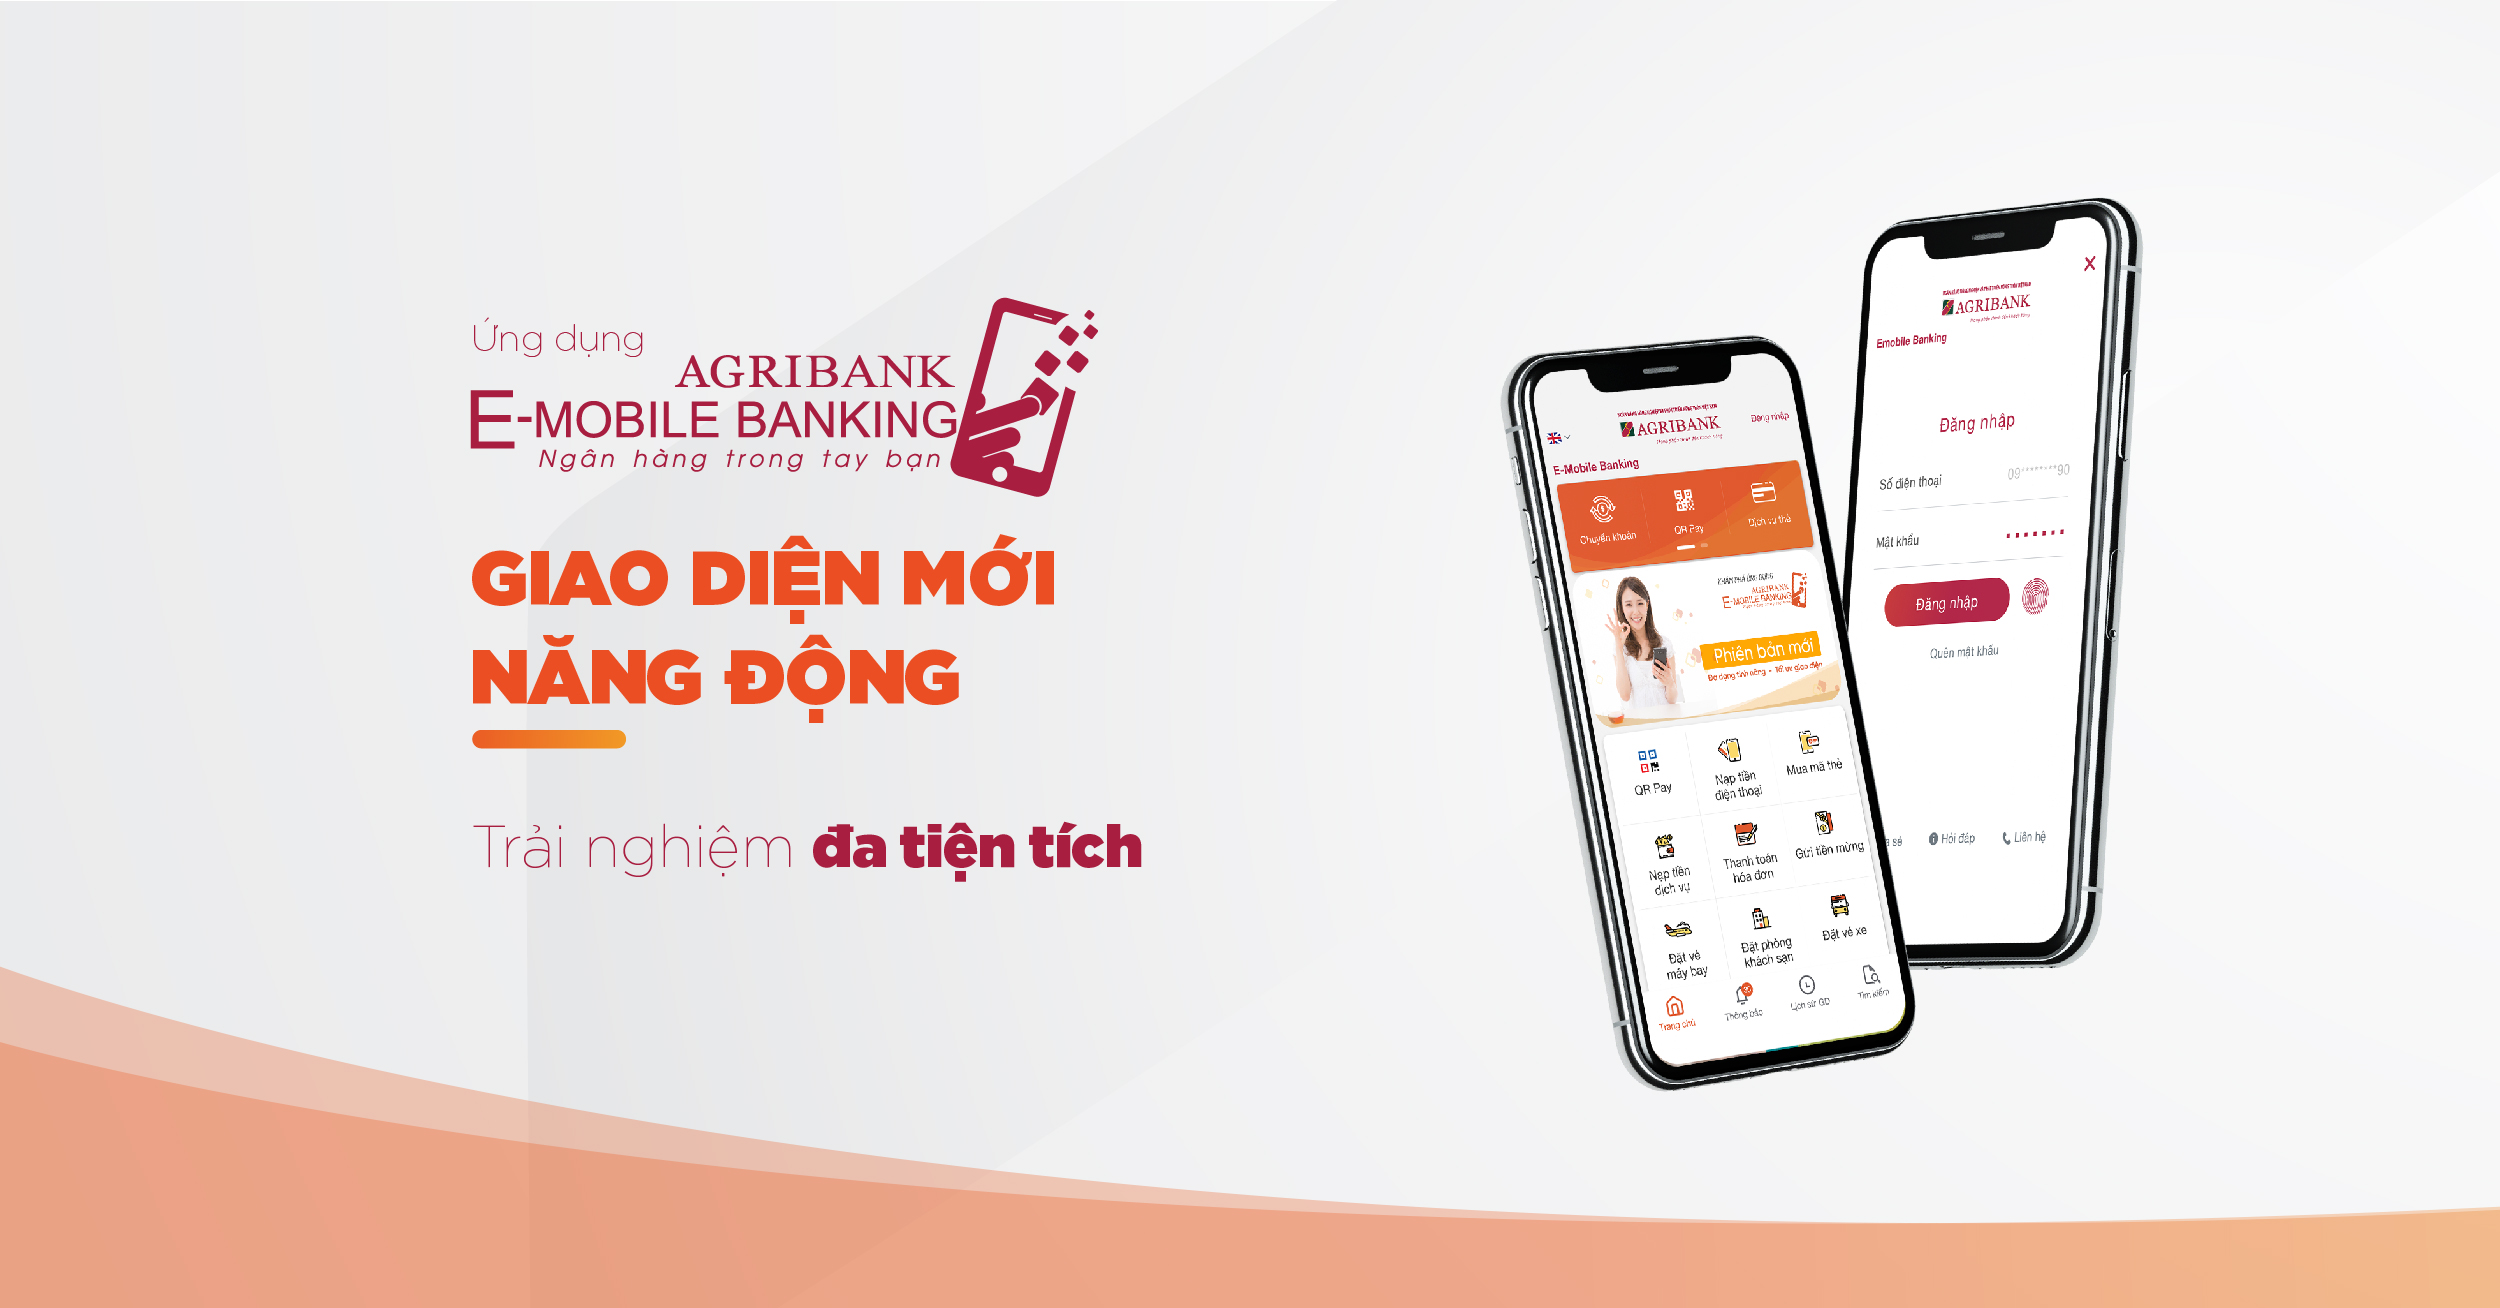 Agribank E-Mobile Banking thay “áo mới”: Giao diện đẹp tinh tế và tâp trung trải nghiệm người dùng